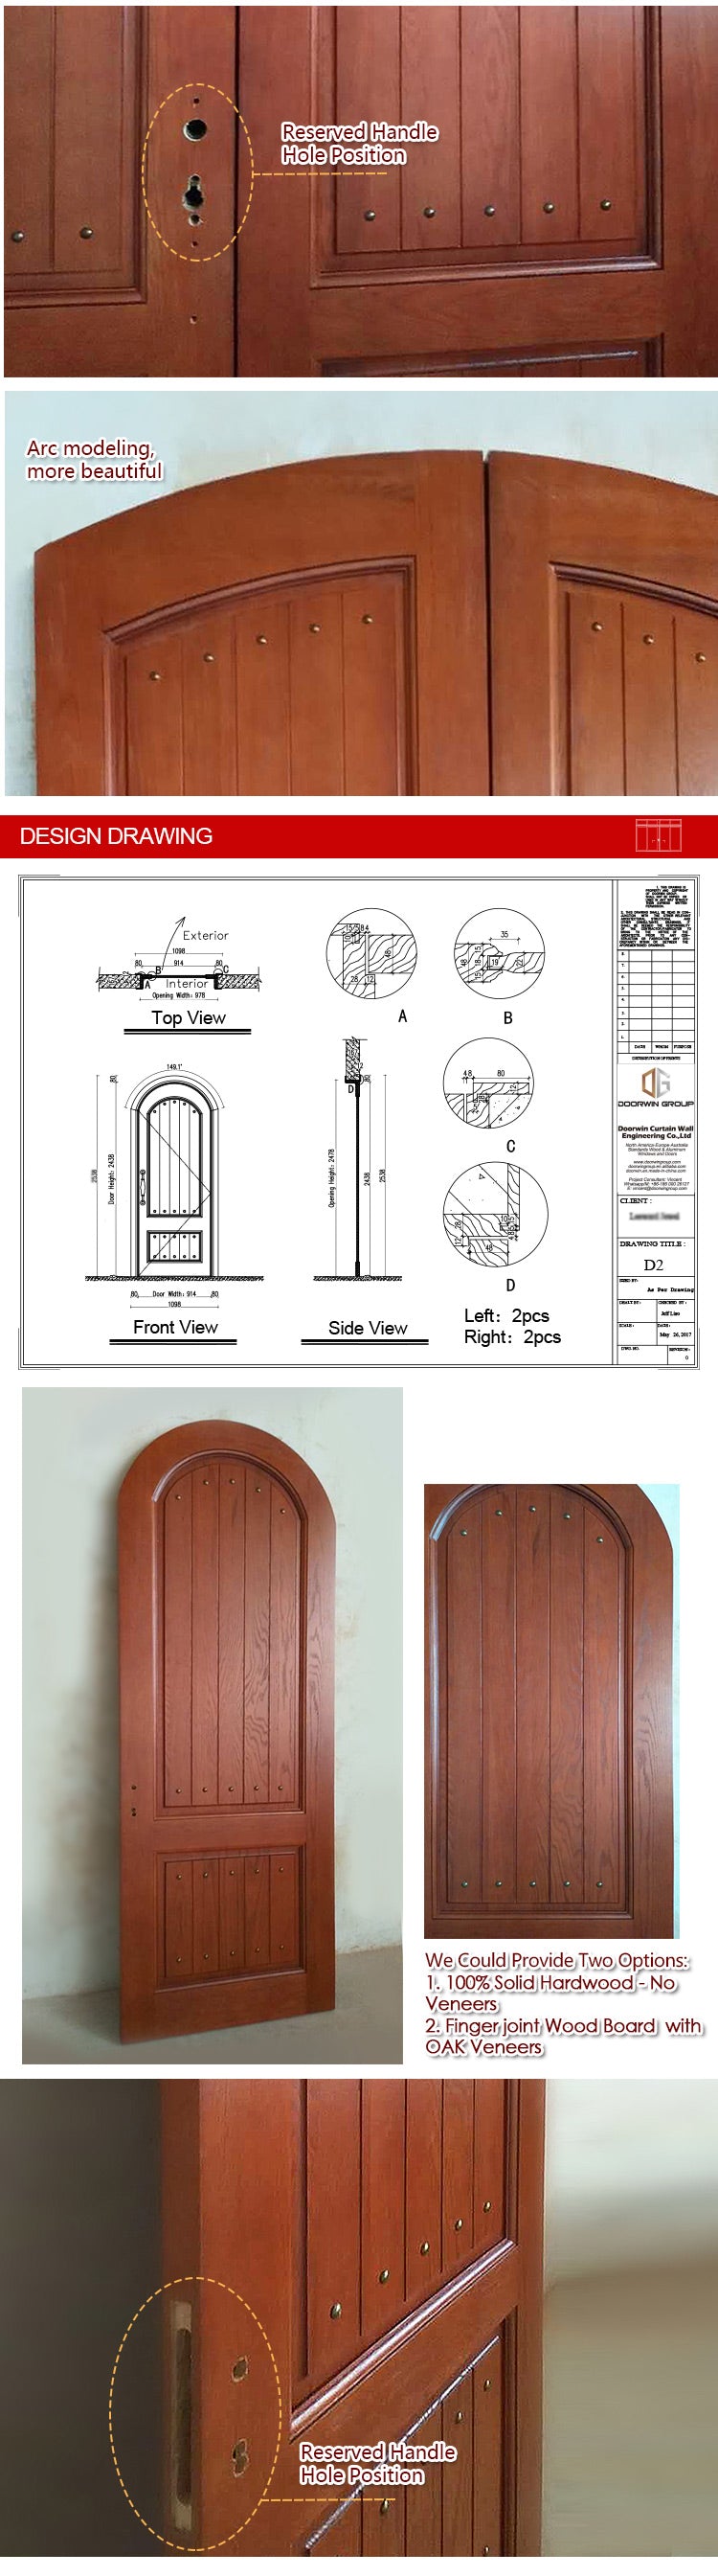 wood-doors_02